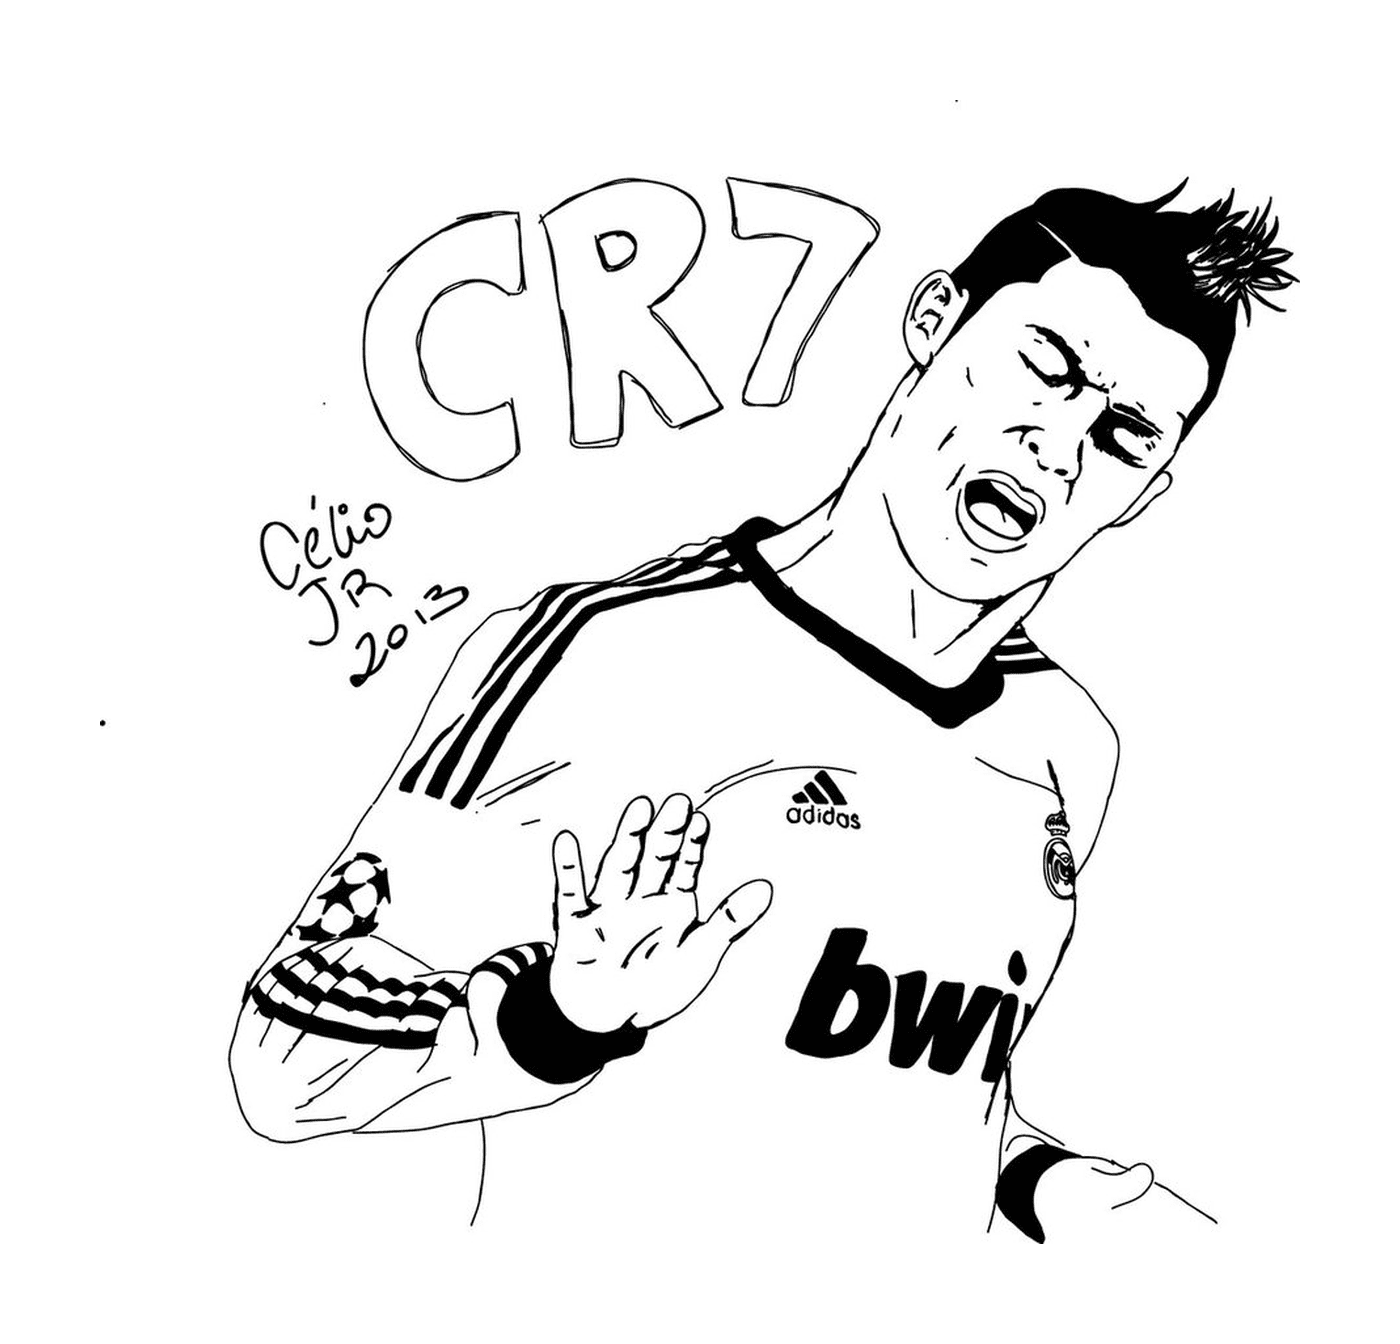  Cristiano Ronaldo celebra un gol 